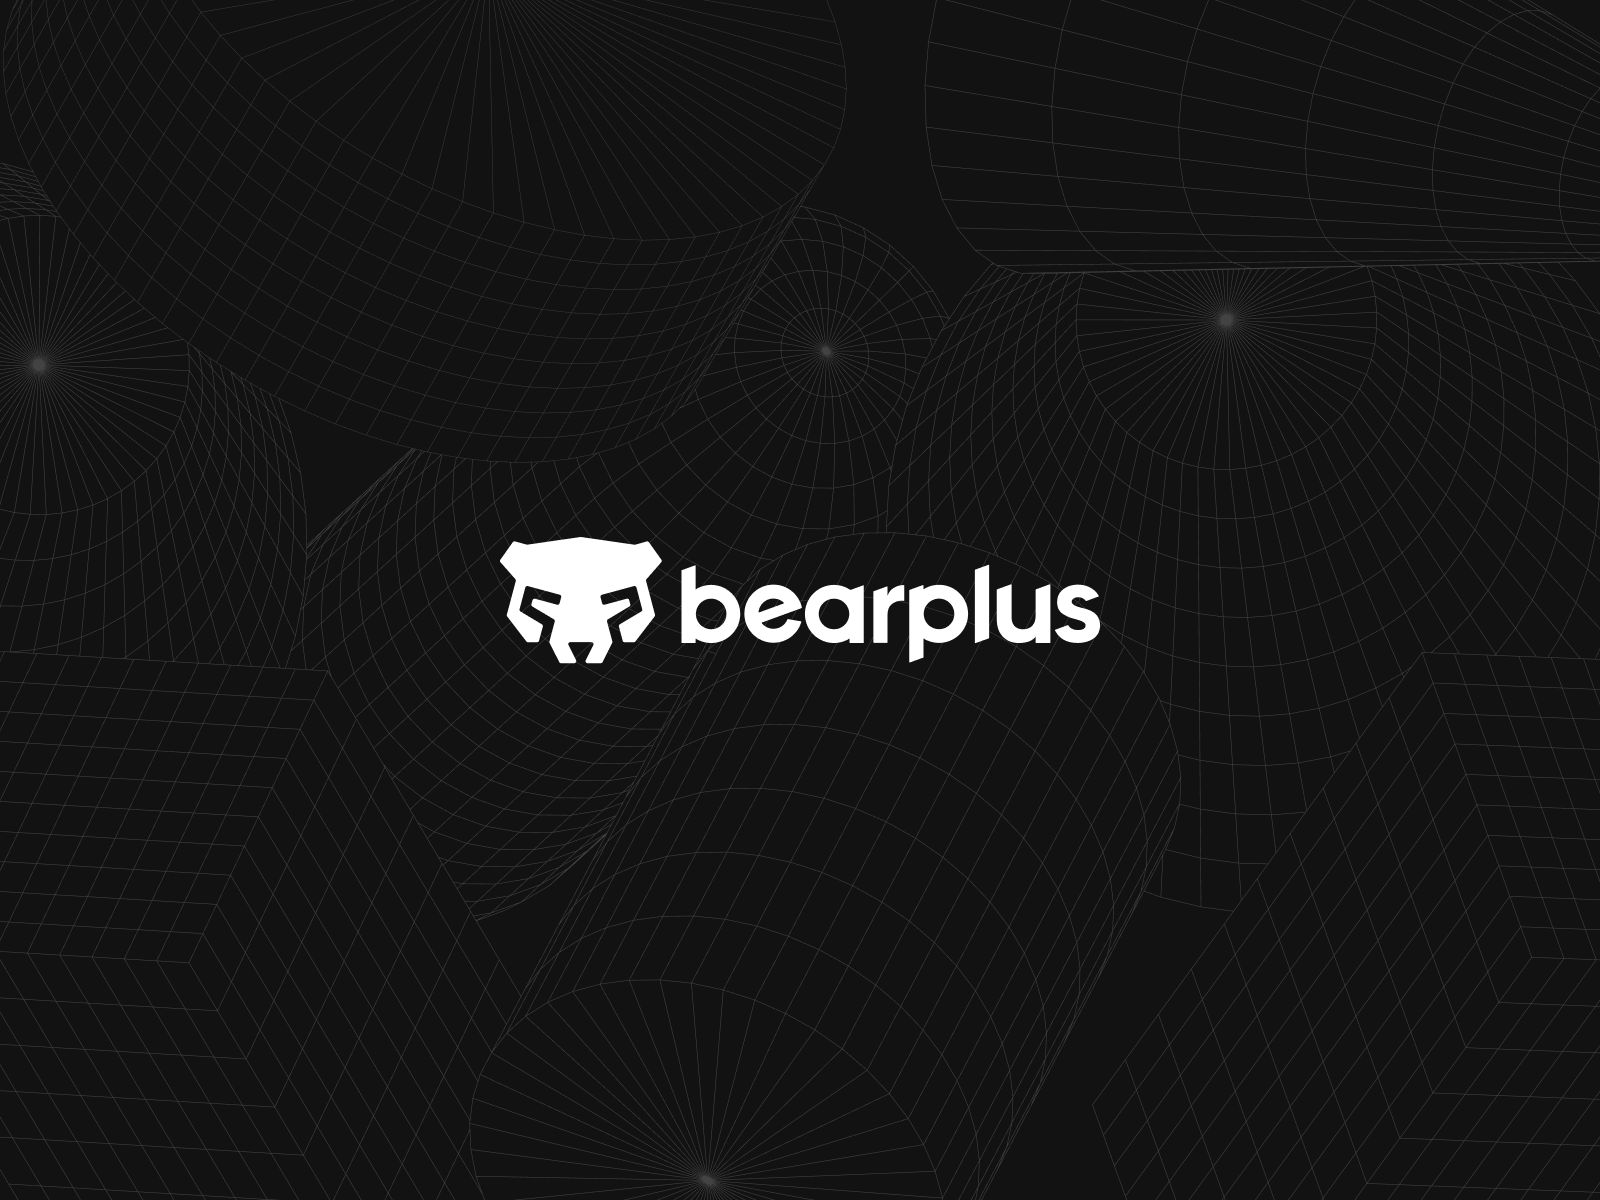 Bear Plus